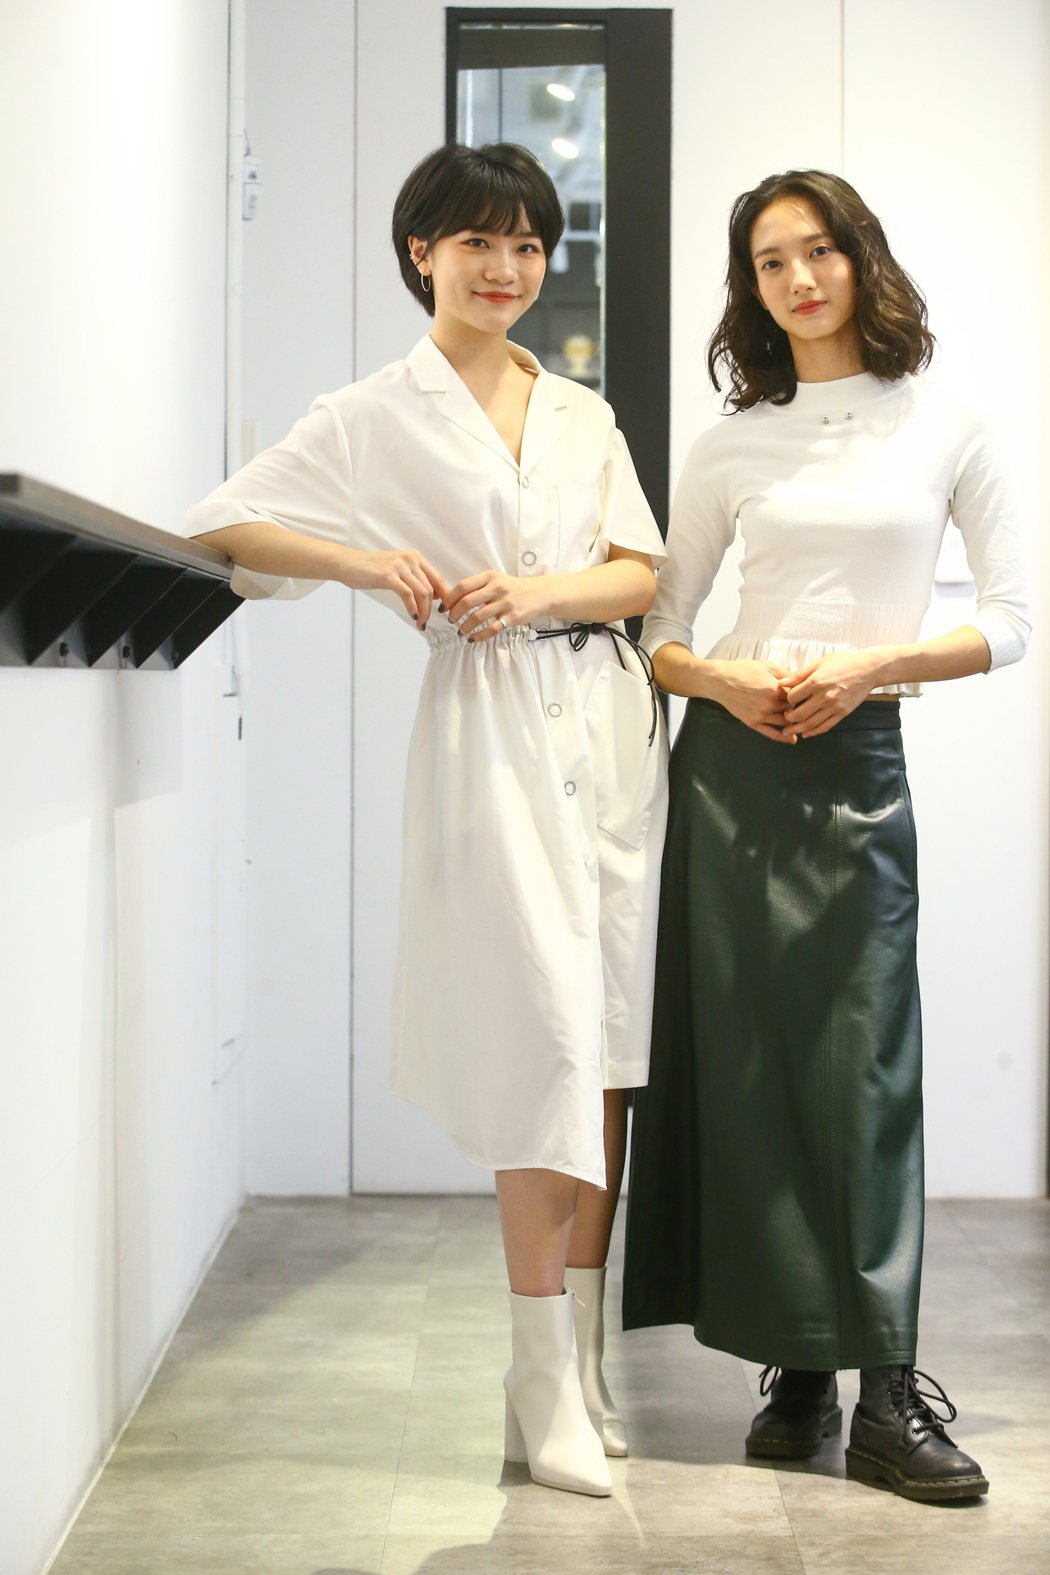 韓寧(右)、李玲葦在「返校」影集中分飾學姊、學妹。記者葉信菉／攝影